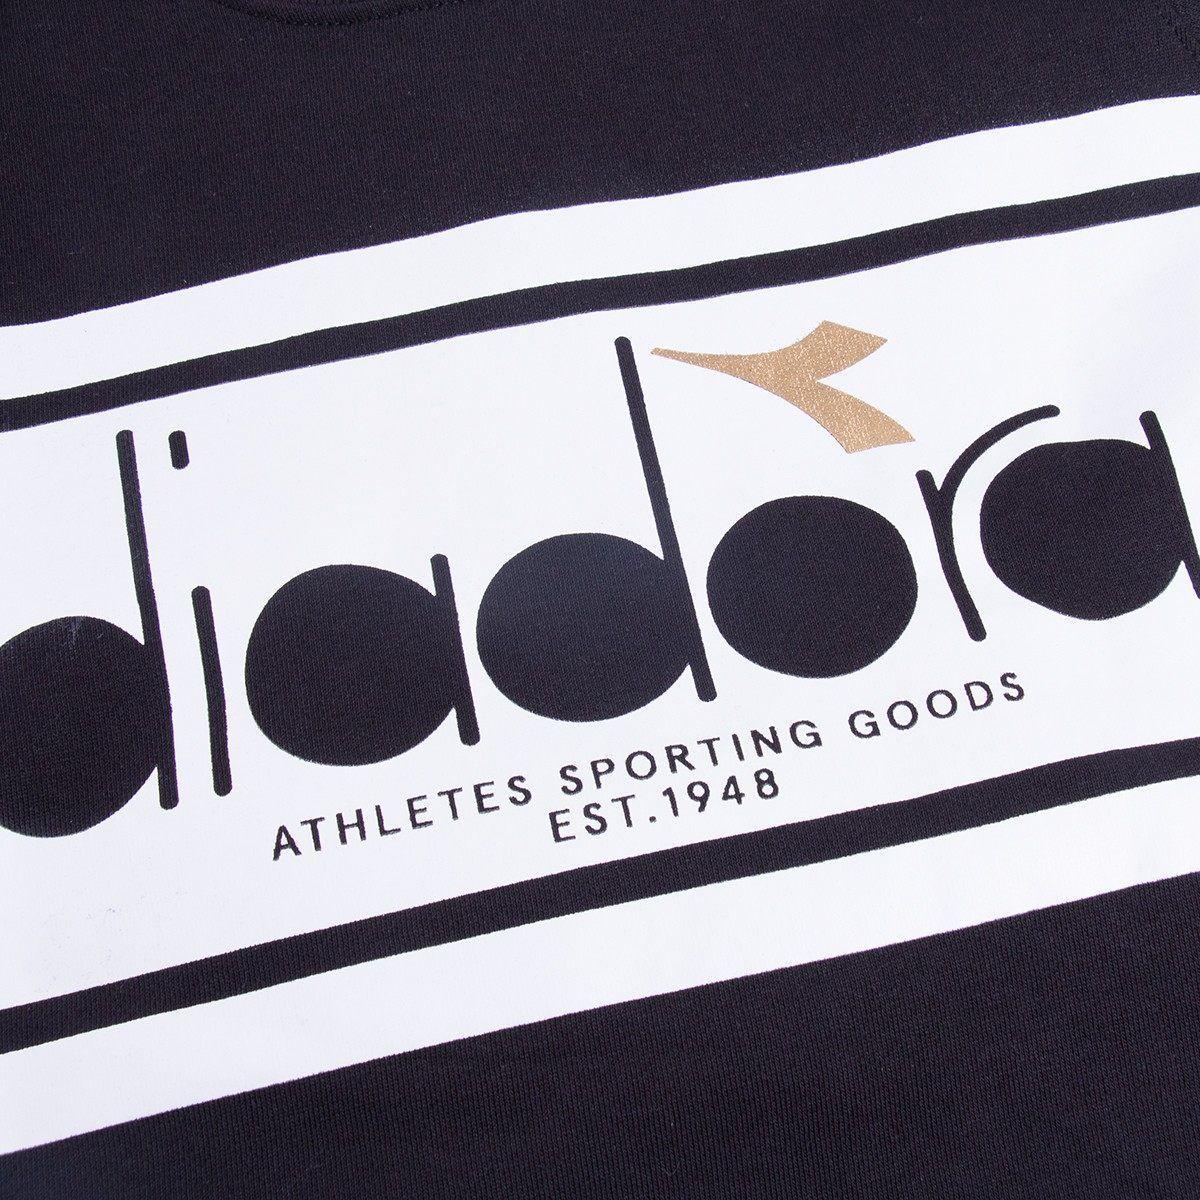 Five Ball Diadora Logo - Diadora Spectra Crew Sweatshirt Black/White